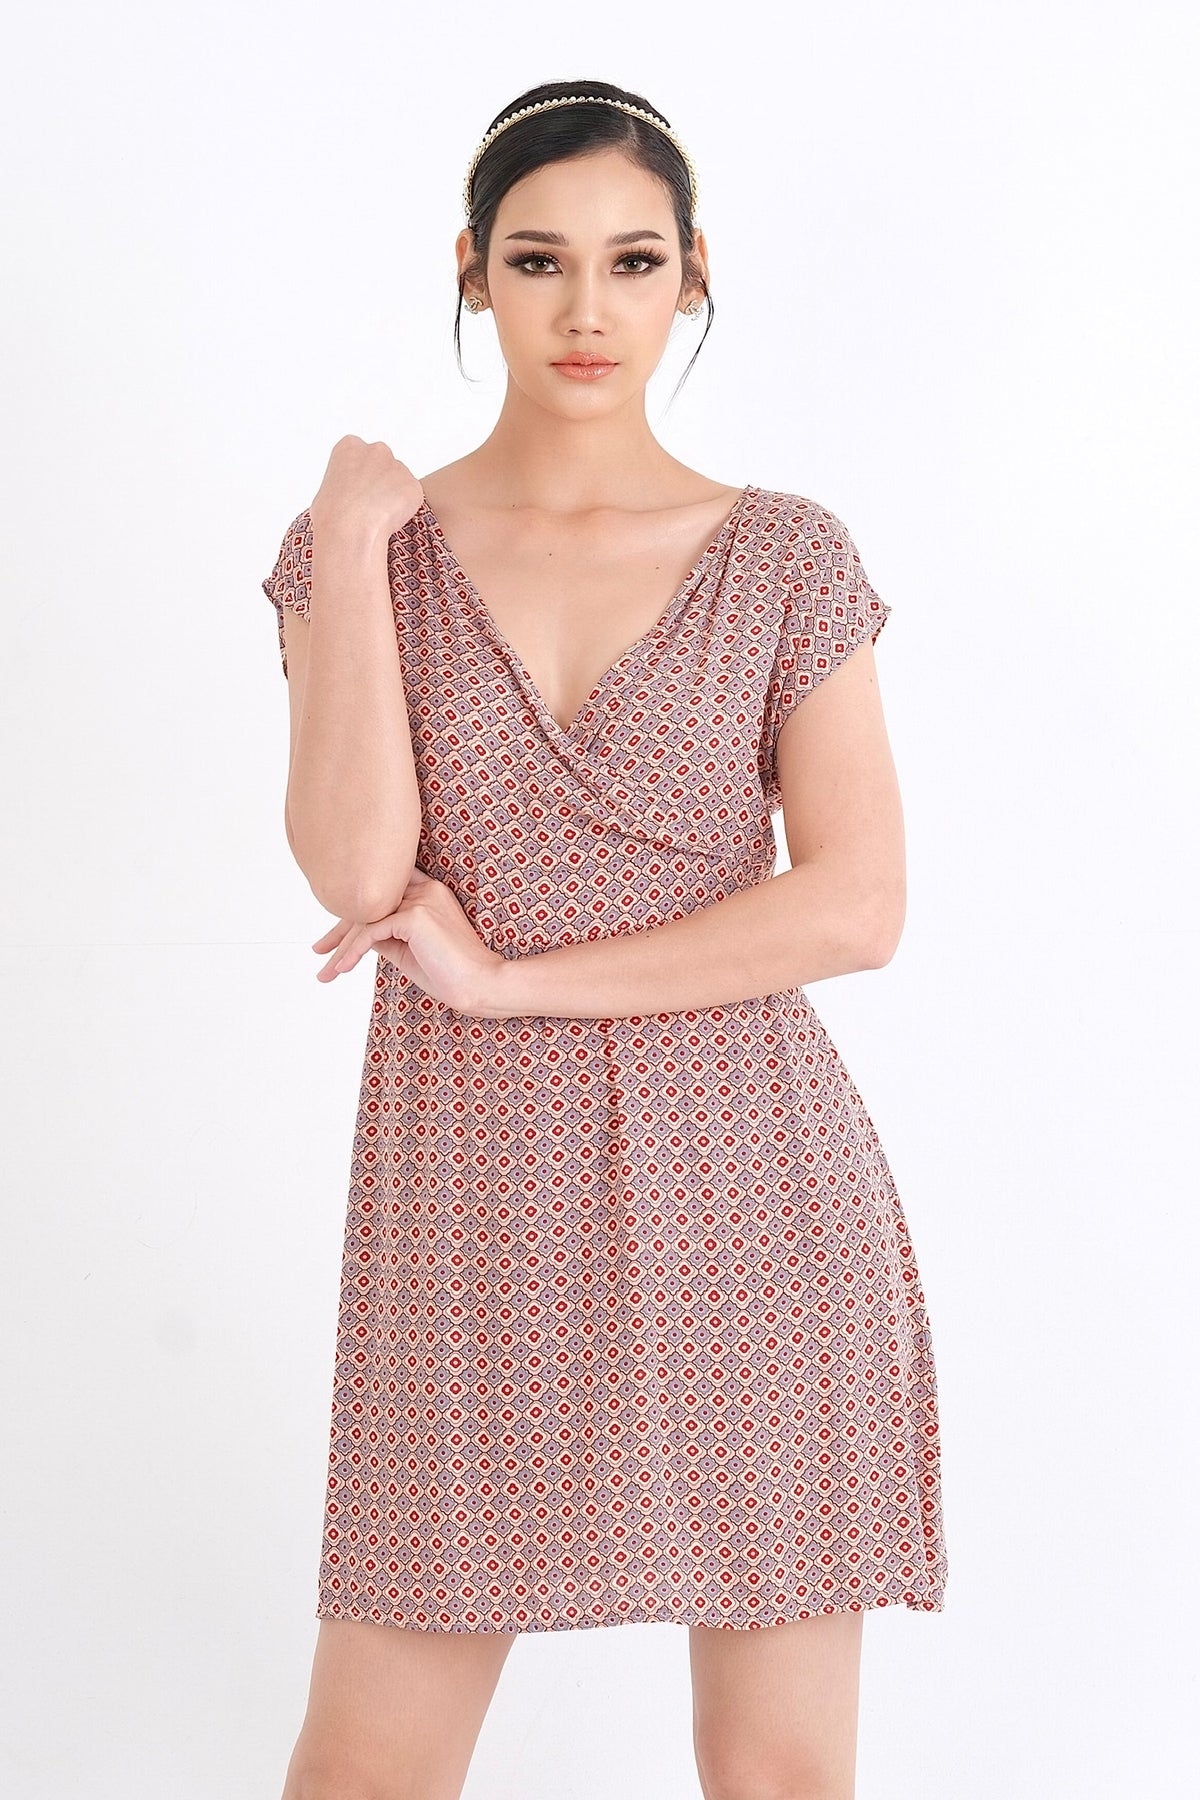 Élégance et confort se rencontrent dans cette robe en viscose, parfaite pour l'été. Disponible en ligne au Québec, trouvez votre taille idéale du XS au XXL pour un style sans effort.